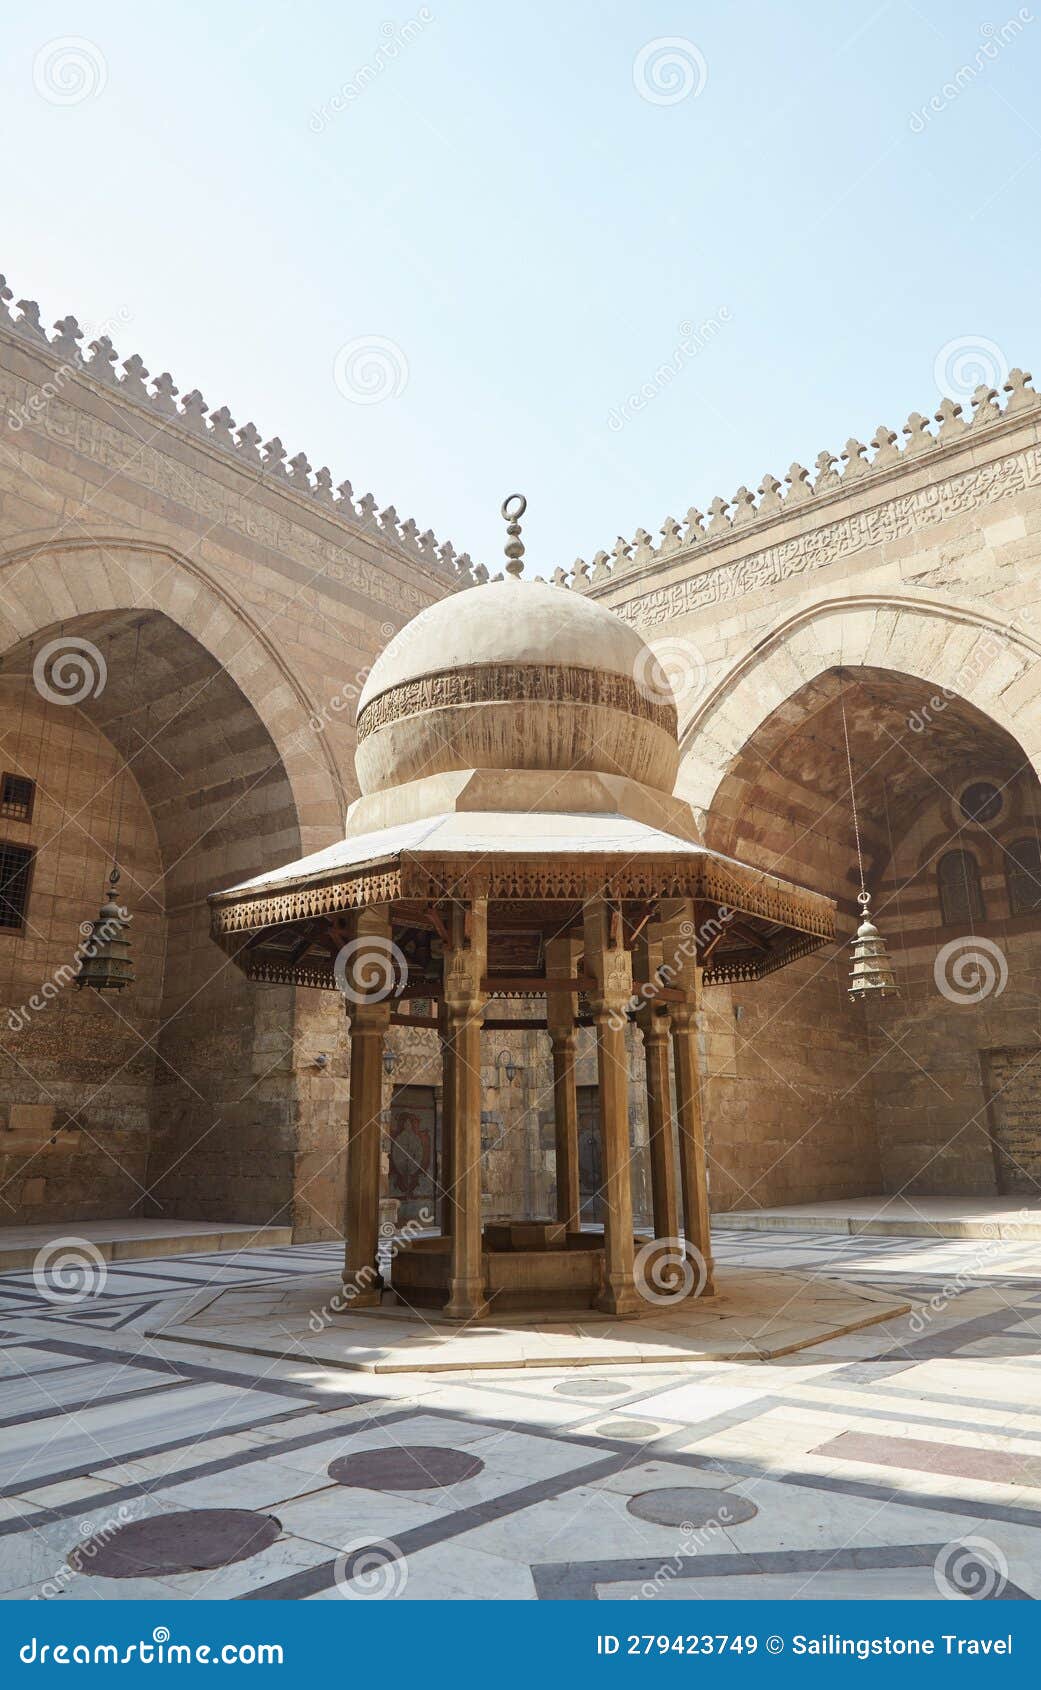 the mosque-madrassa of sultan barquq on cairo's al-muizz street